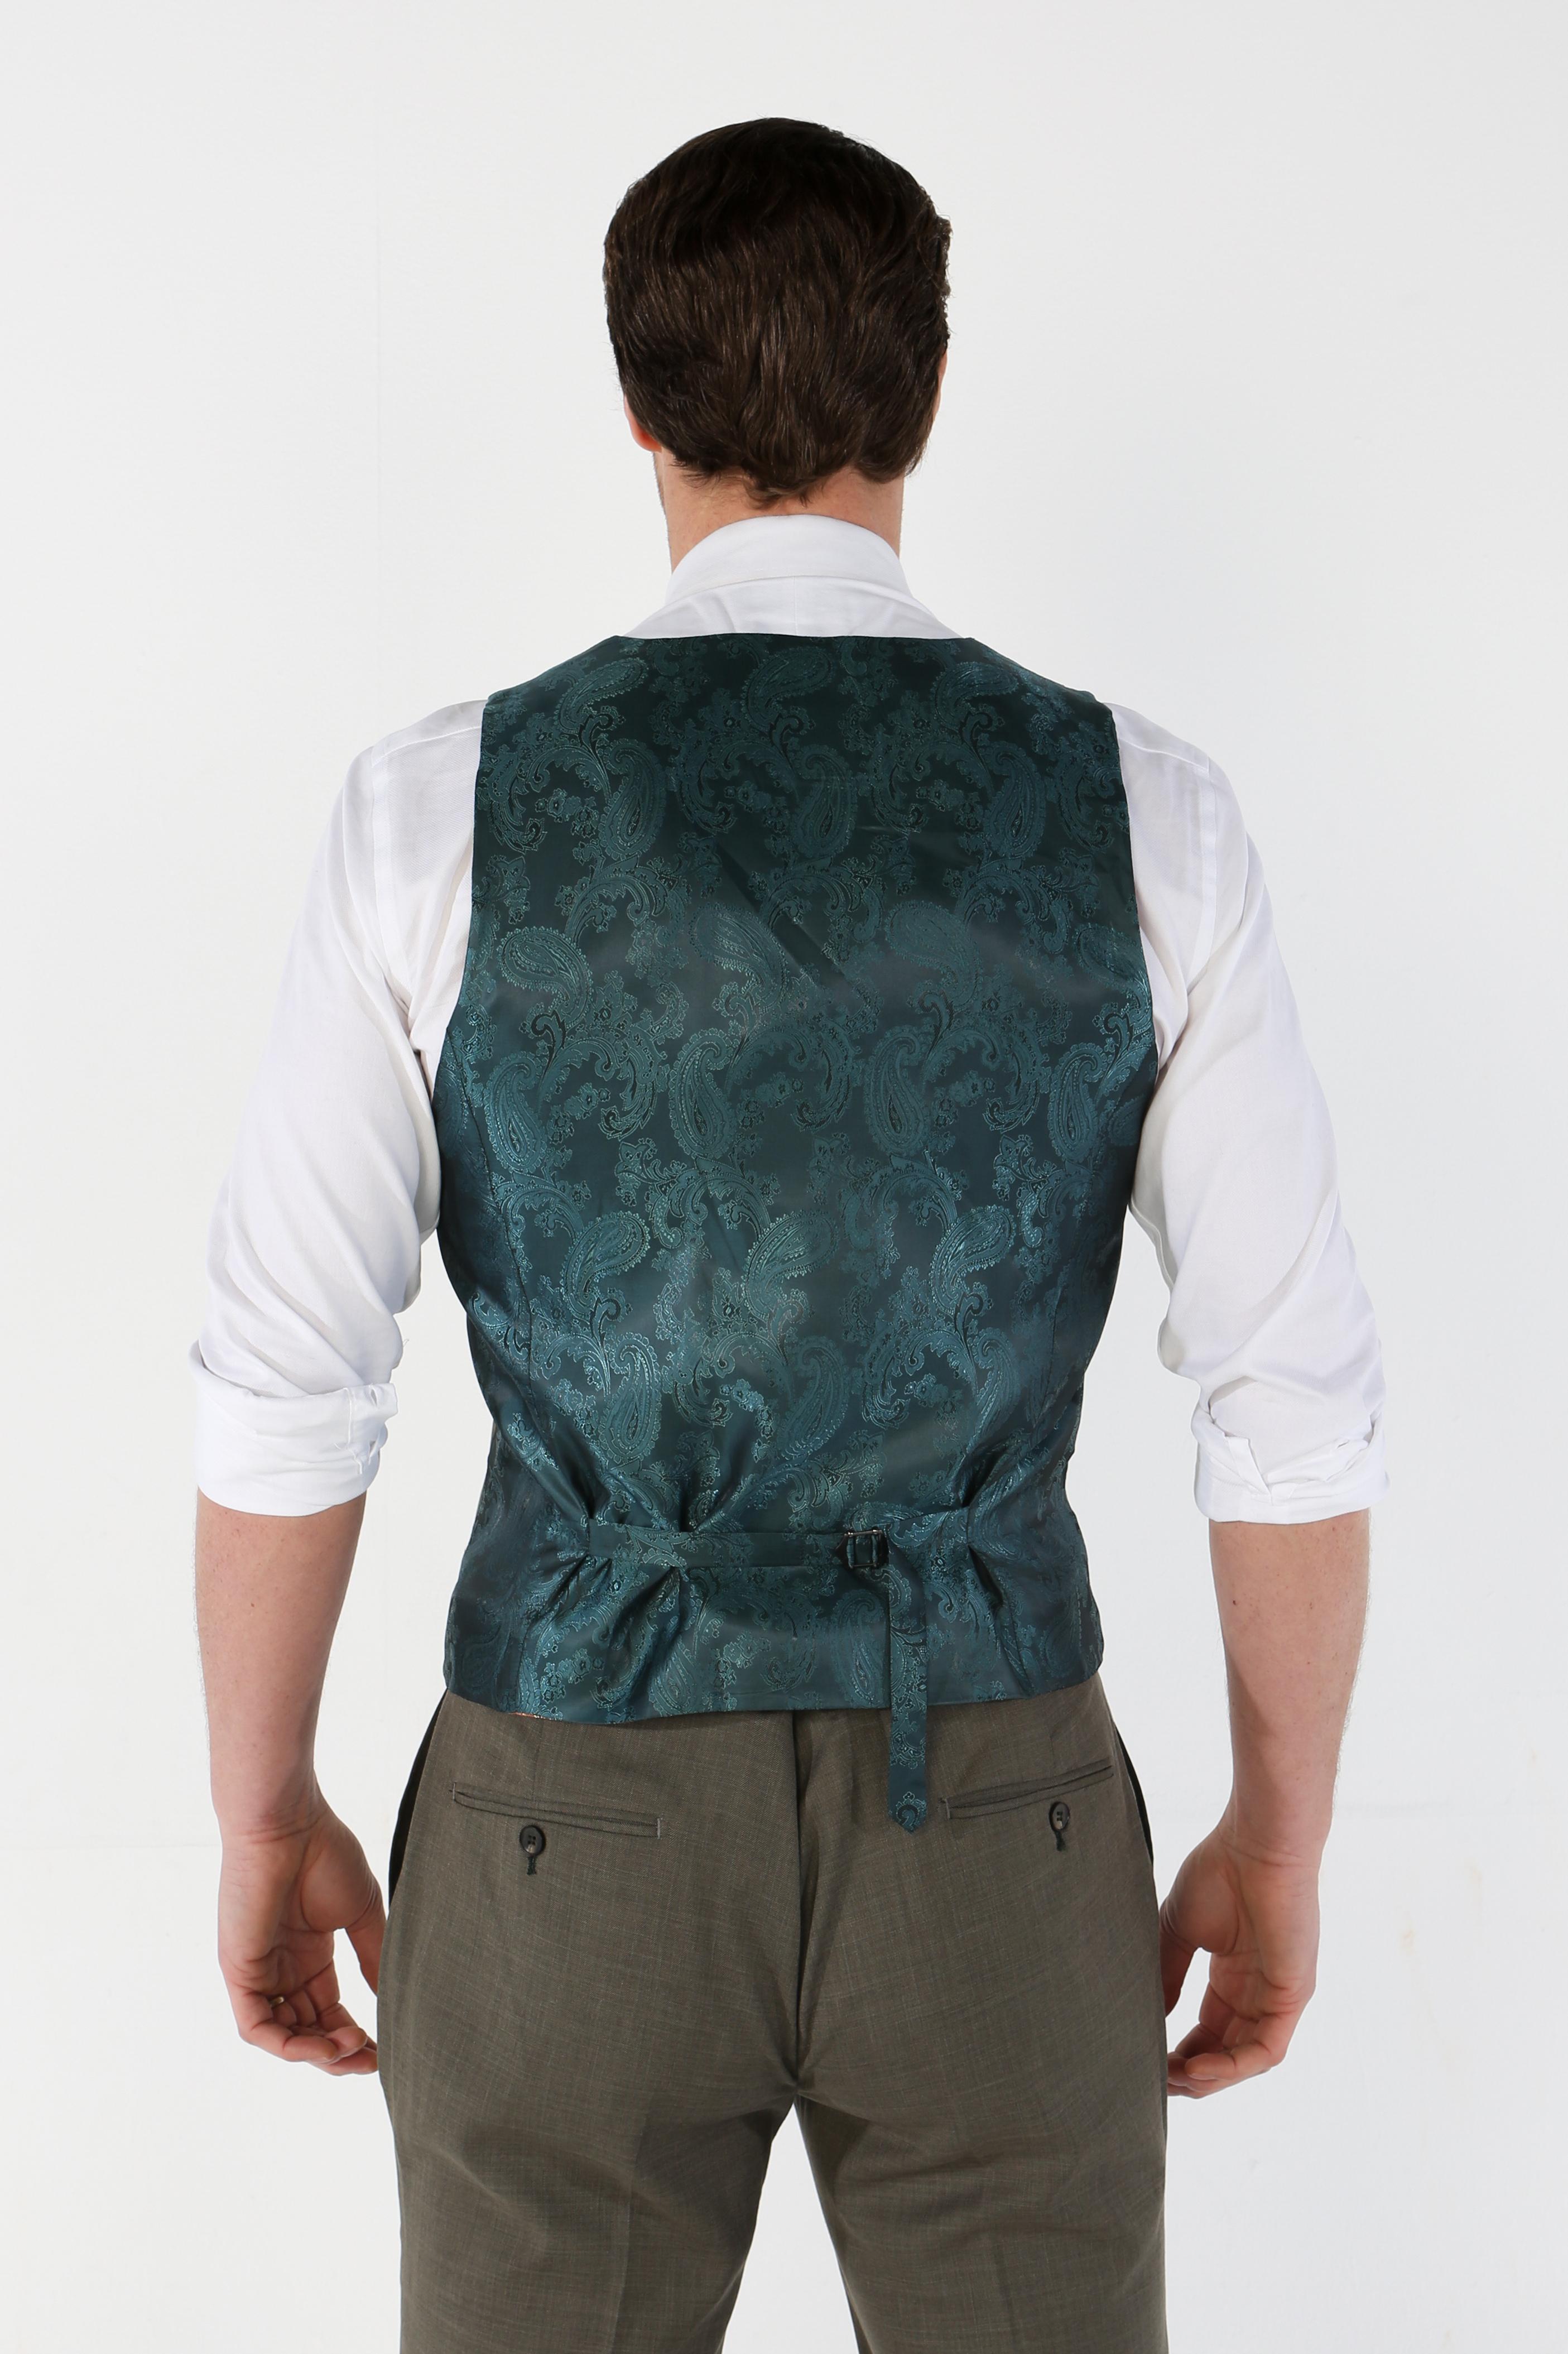 Men's Tailored Fit Plaid Waistcoat - KURT - Sage Green